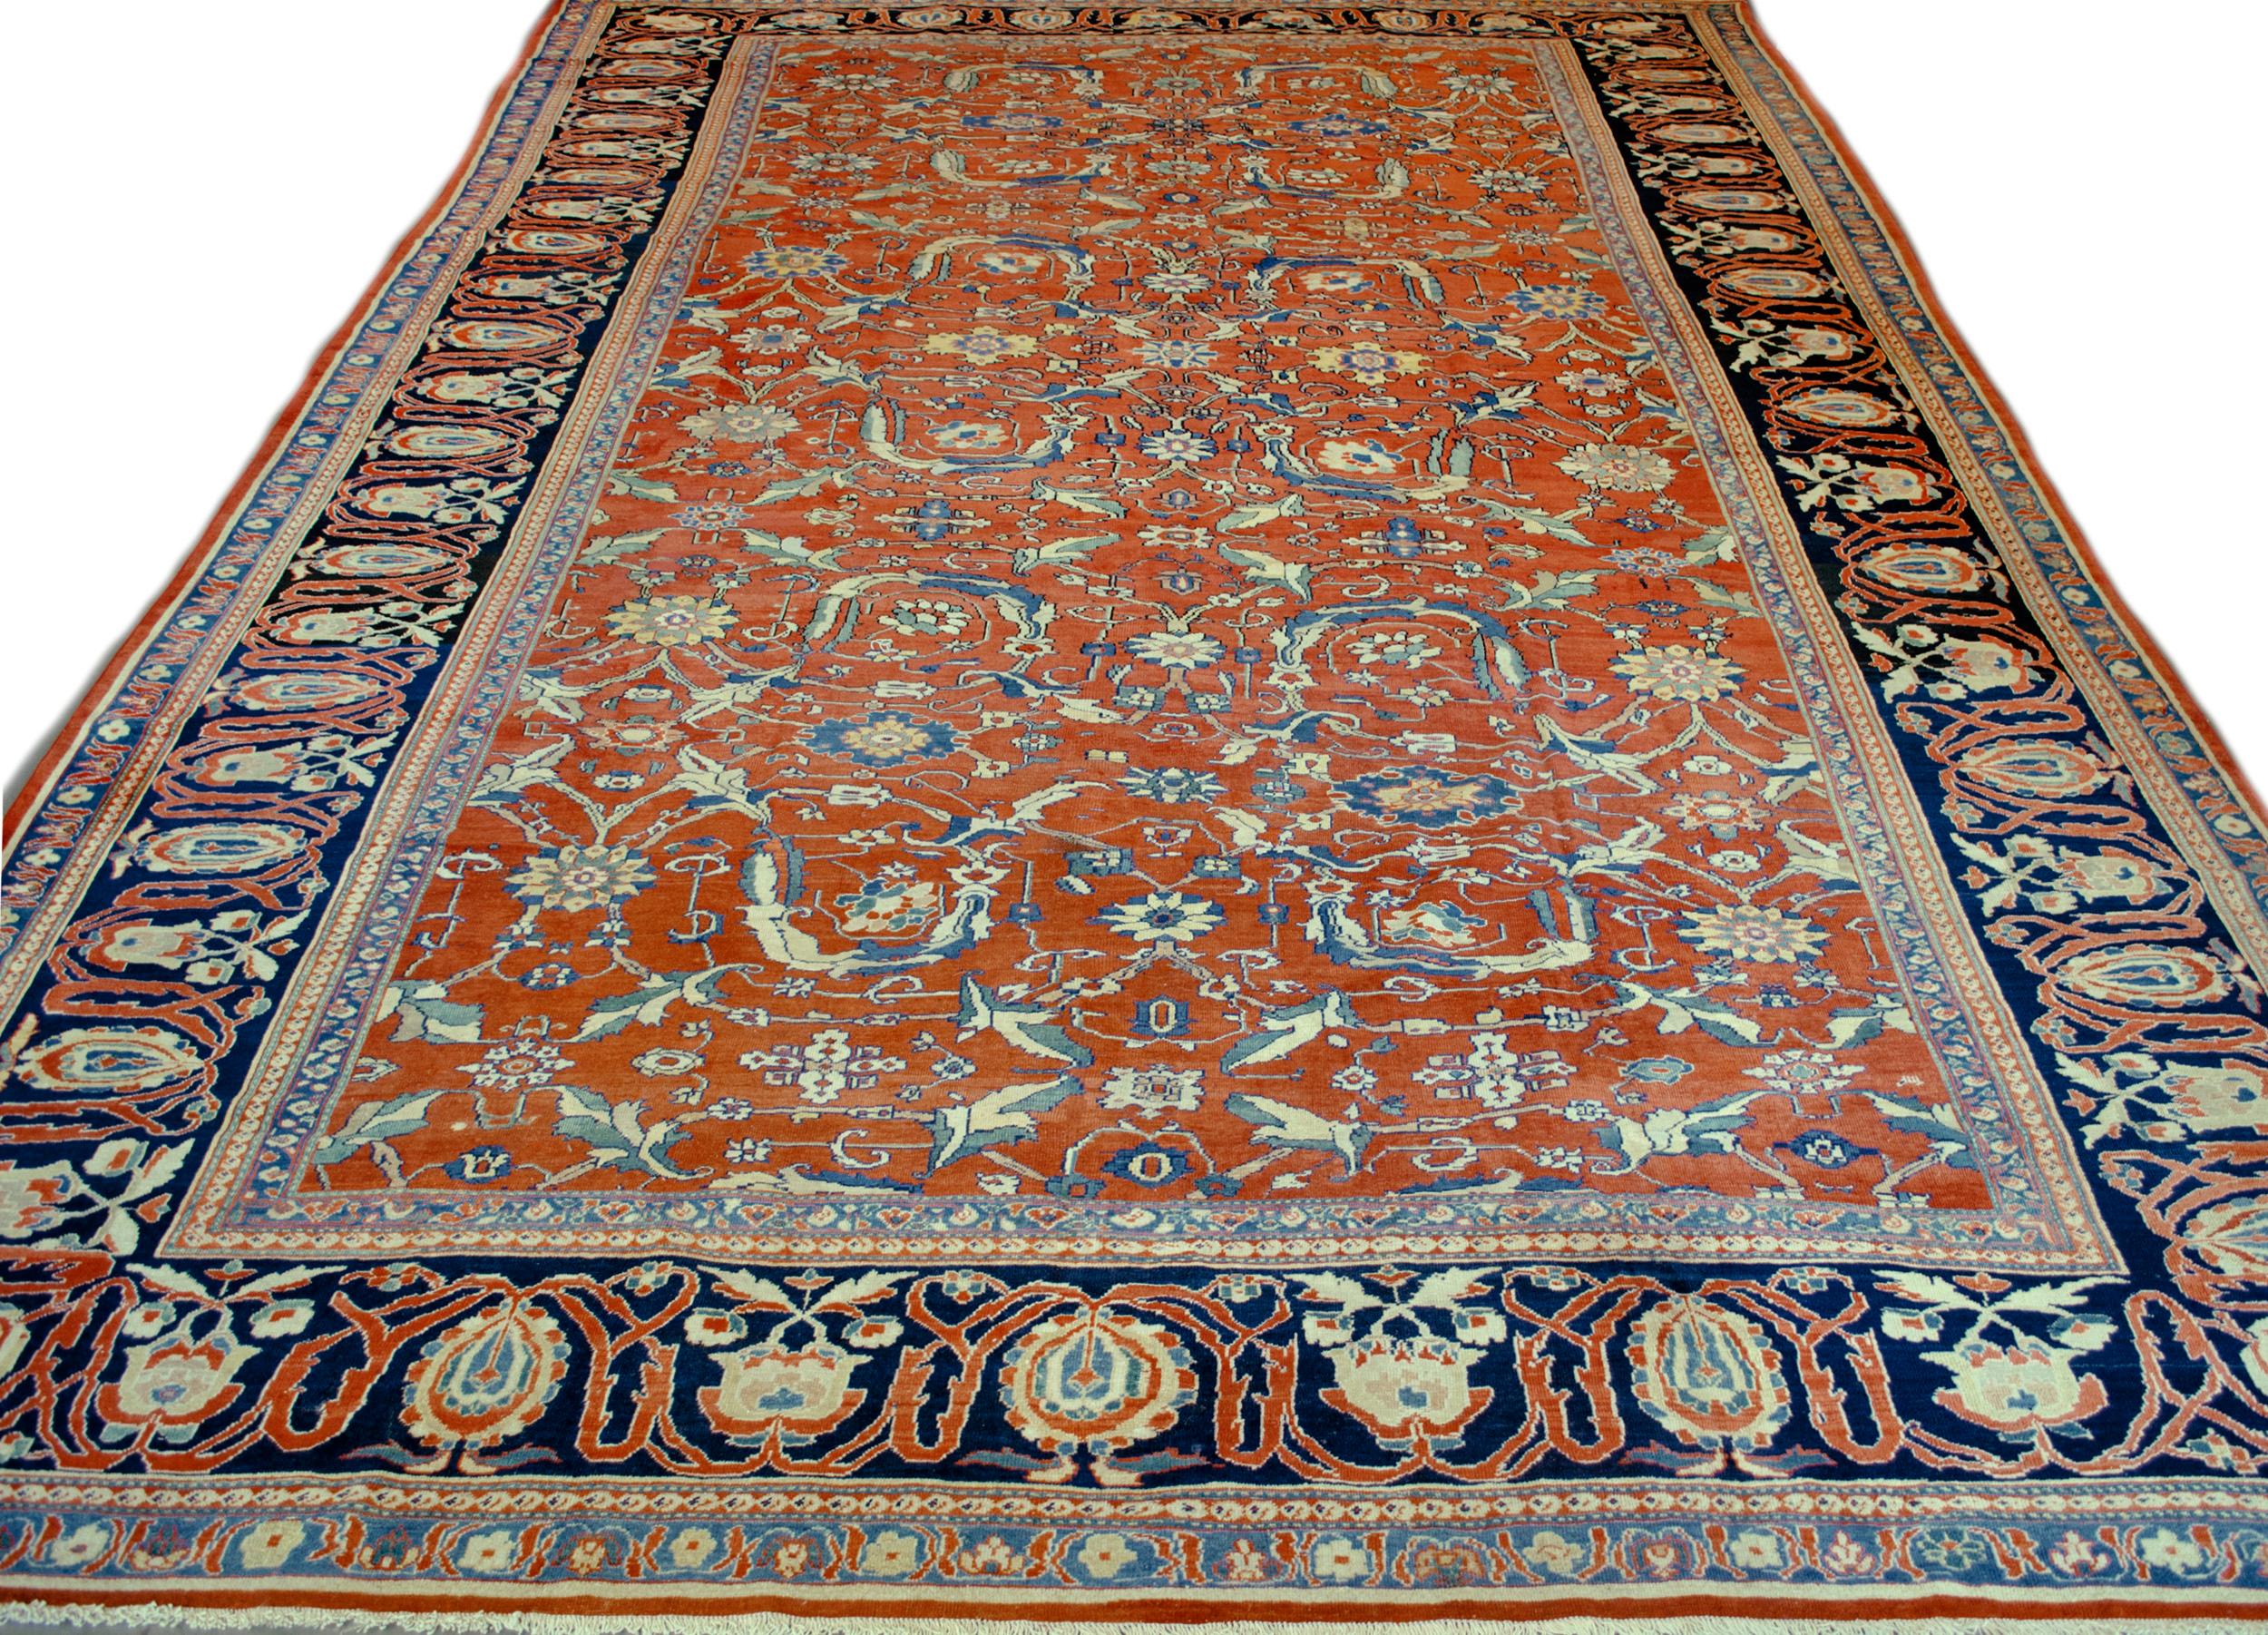 Ce tapis traditionnel persan Fereghan tissé à la main présente un champ rouge brique de pendentifs en rosette émettant des vignes stylisées formant un treillis en losange, entourant d'autres motifs floraux fins, dans une bordure de cyprès et de